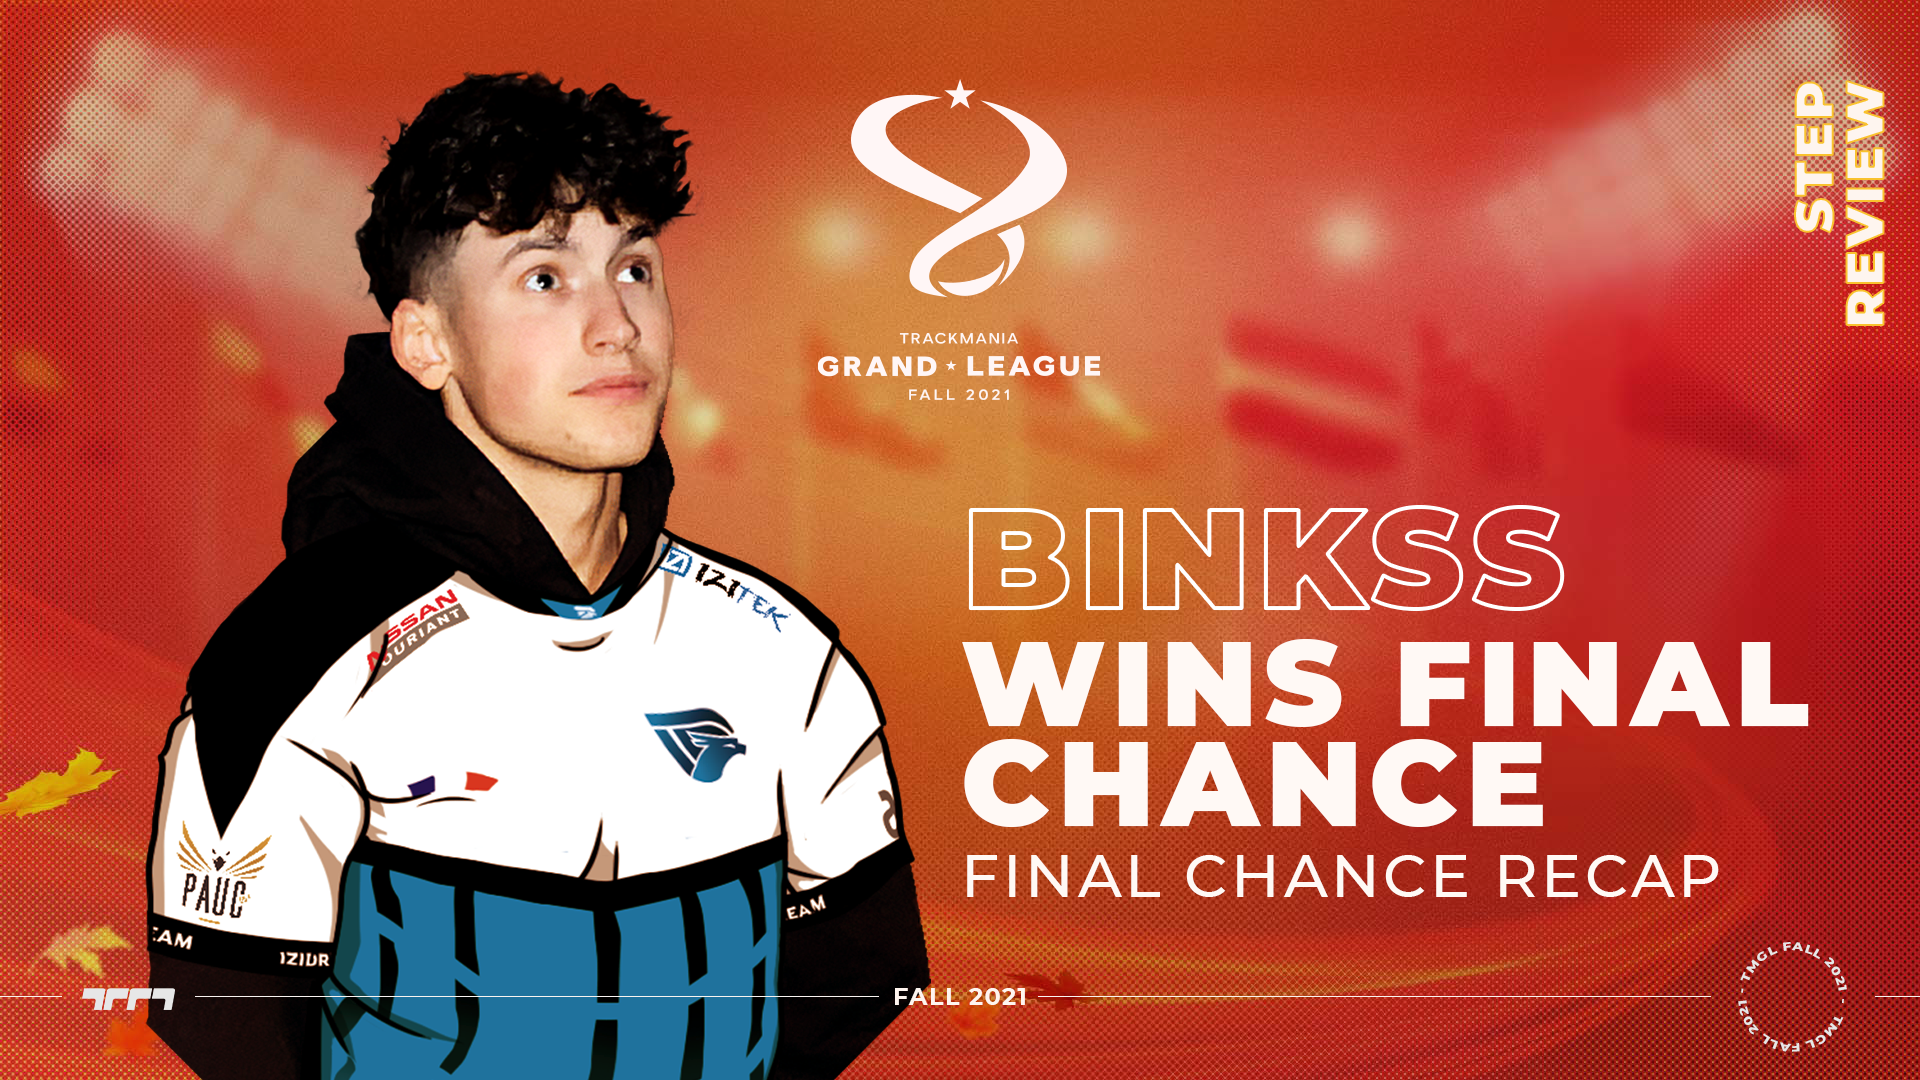 Binkss wins the Final Chance